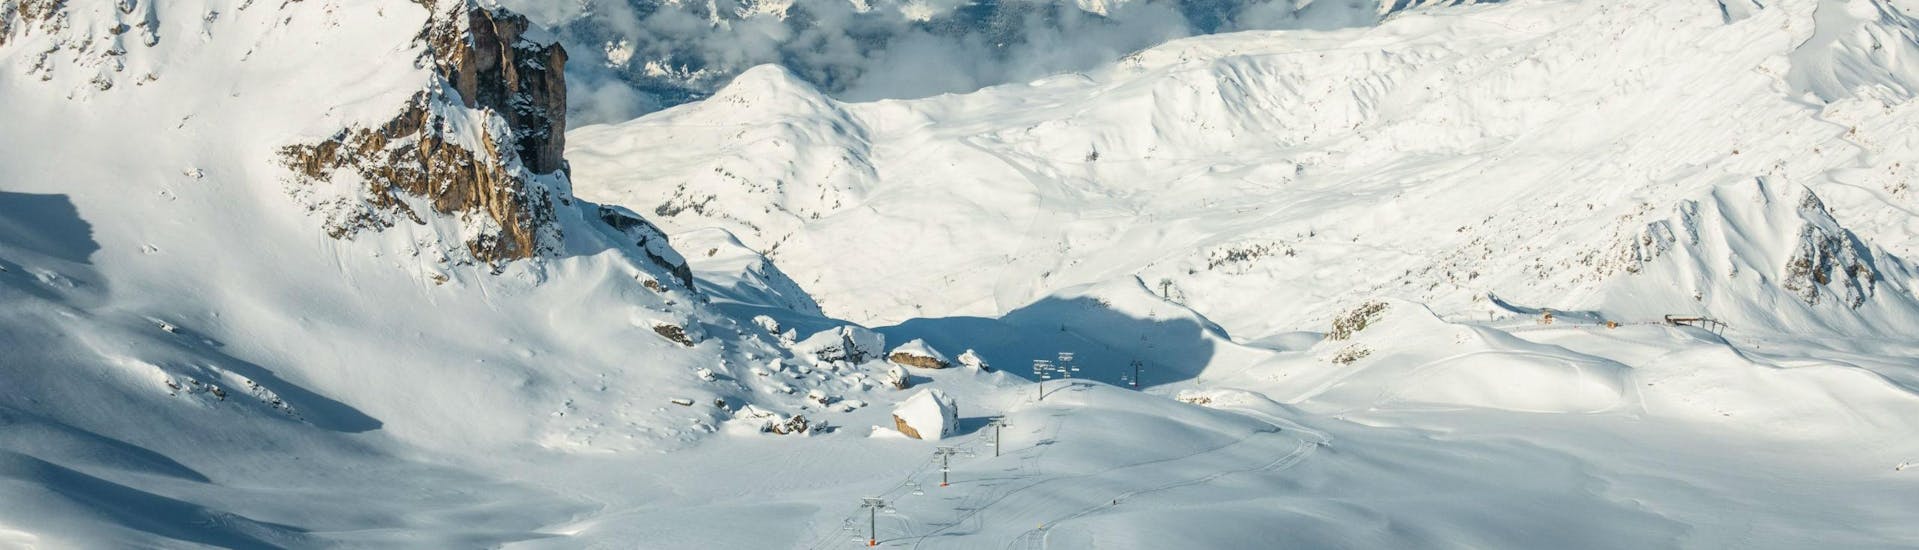 Ein Panoramablick über La Plagne, eine beliebtes Skigebiet in den französische Alpen, wo örtliche Skischulen für all diejenigen, die das Skifahren lernen wollen, Skikurse anbieten.